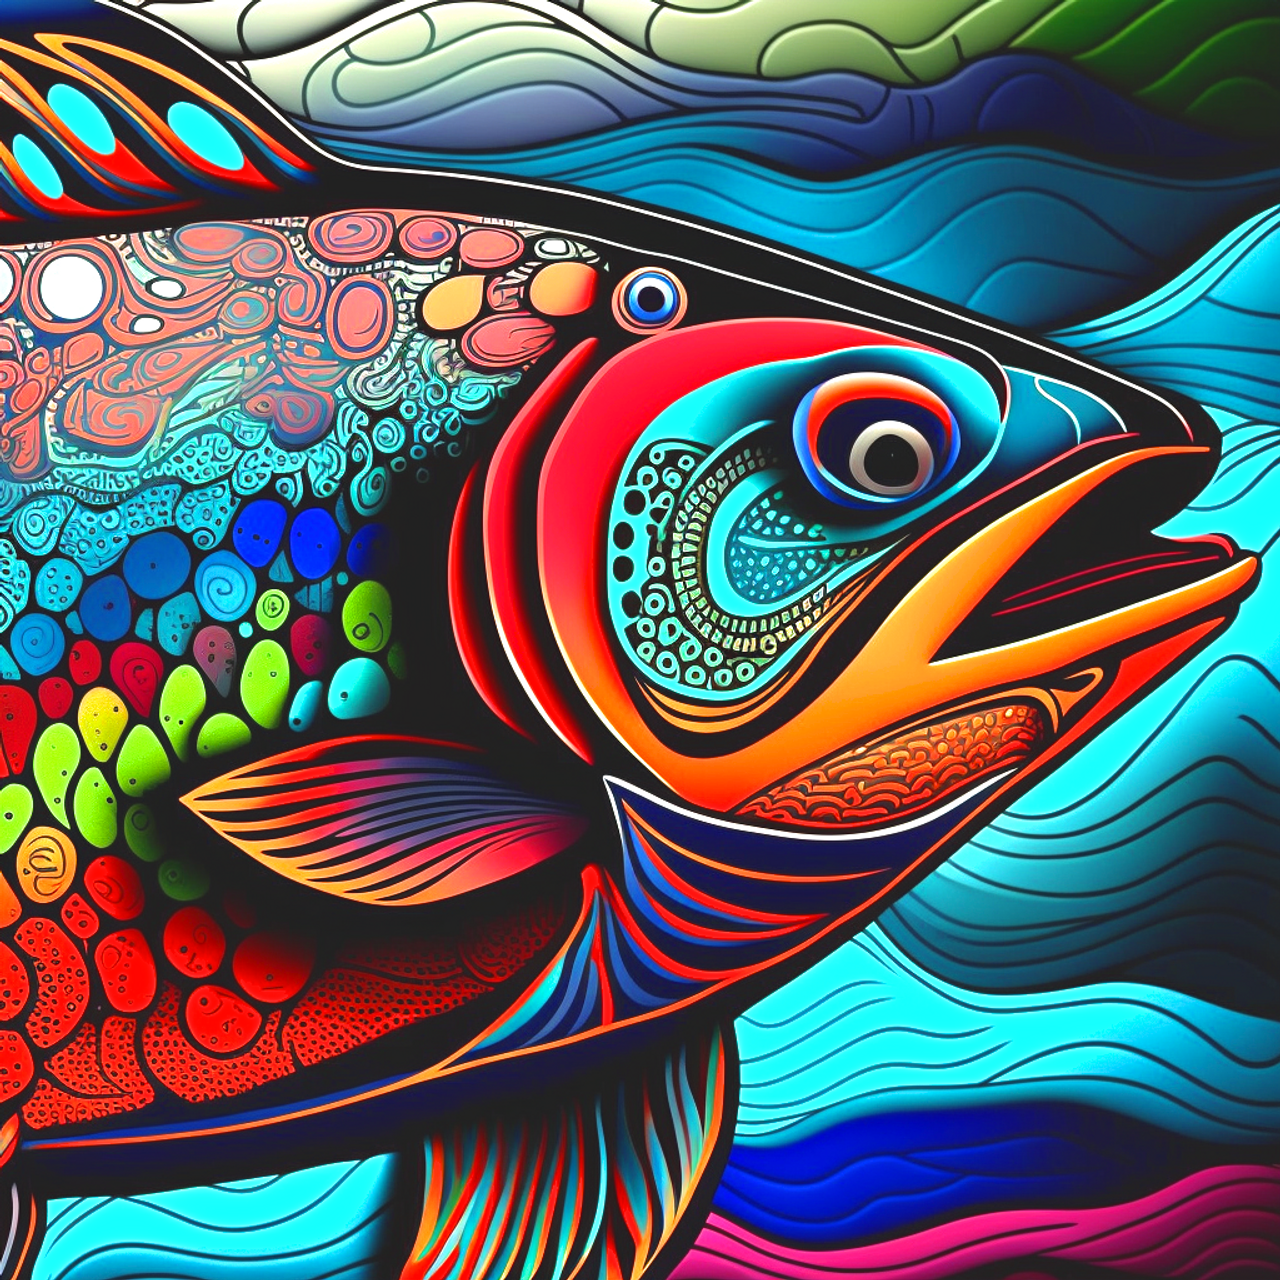 5D Diamond Painting Abstract Rainbow Fish Design Kit - Bonanza Marketplace